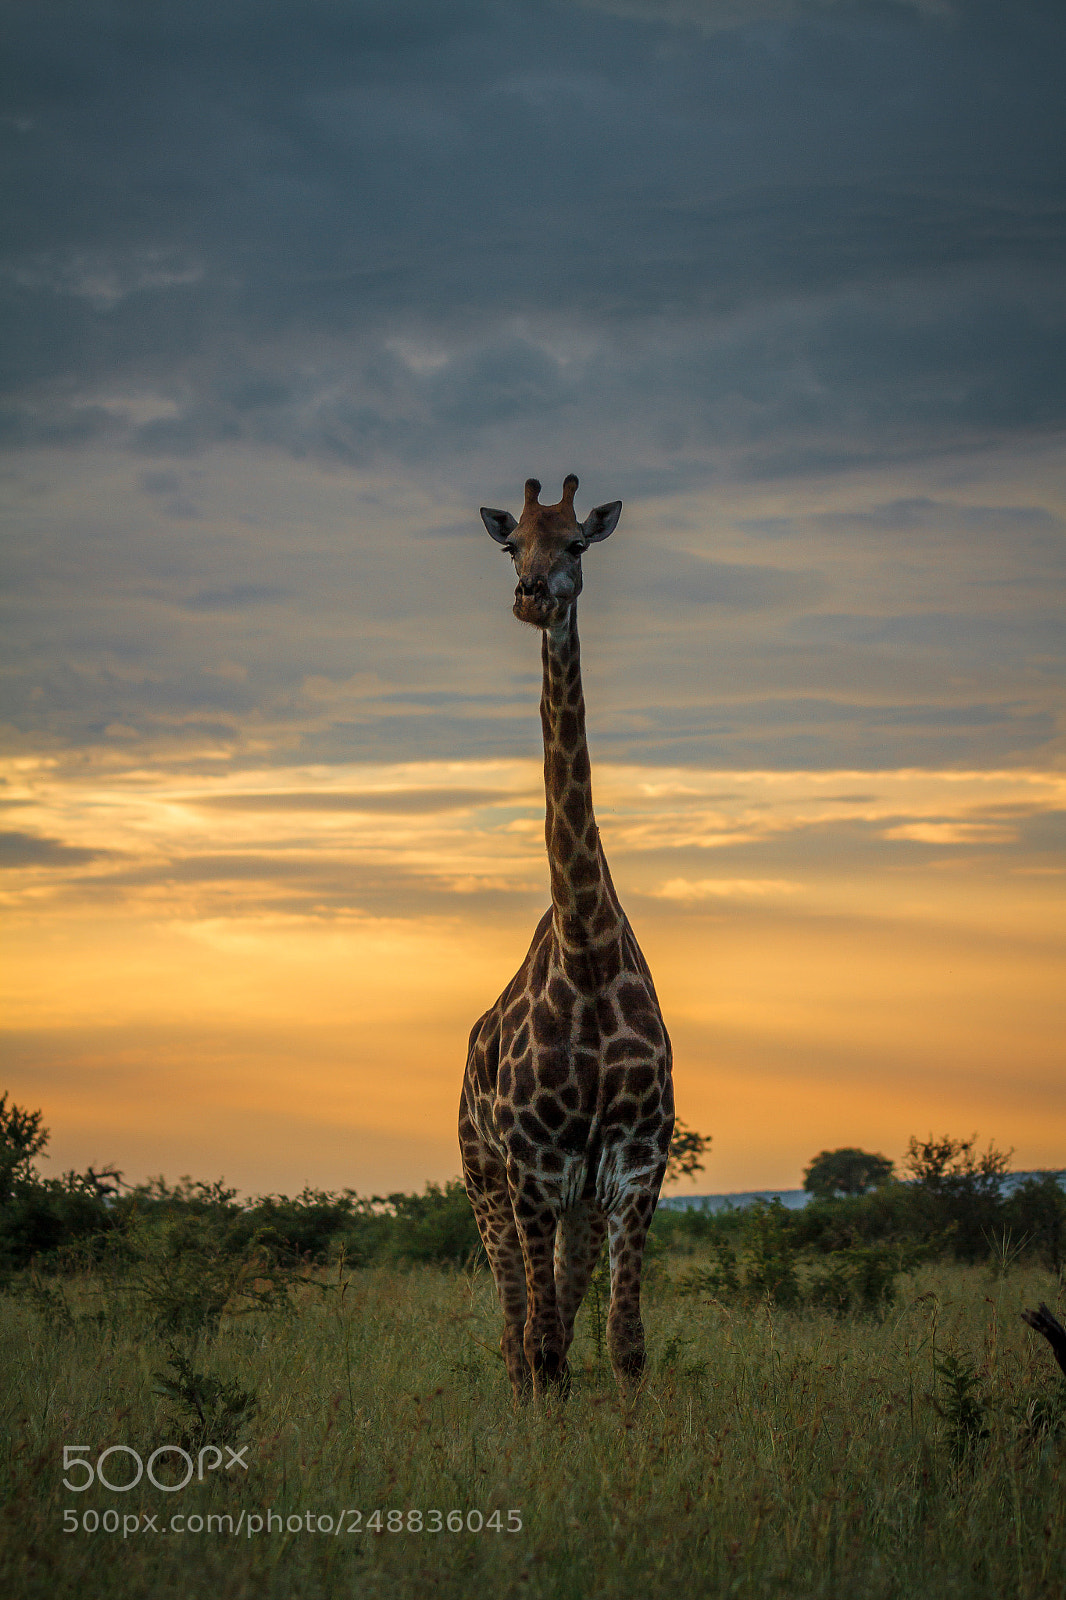 Canon EOS 7D sample photo. Giraffe, early morning photography